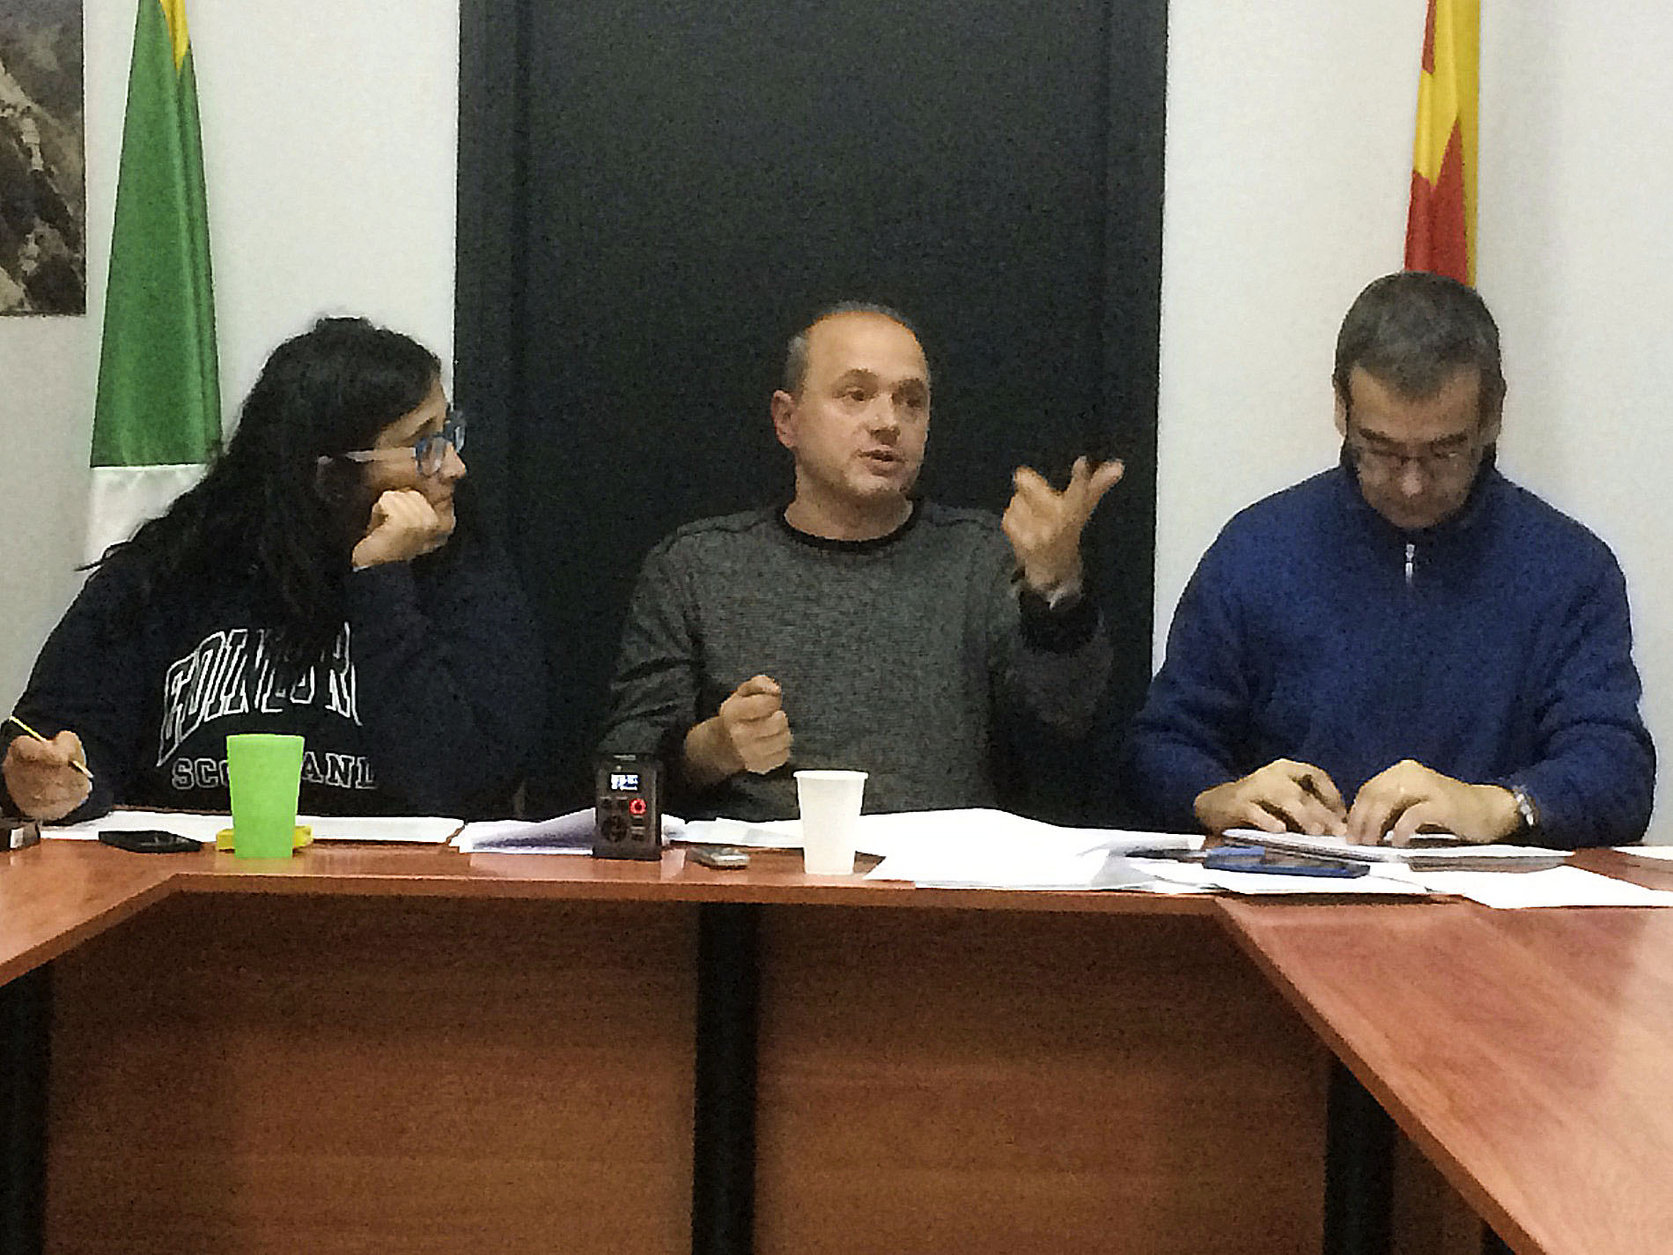 La primera tinent d'alcalde, Griselda Castells, l'alcalde Jordi Fàbrega i el secretari de l'Ajuntament en un ple al desembre